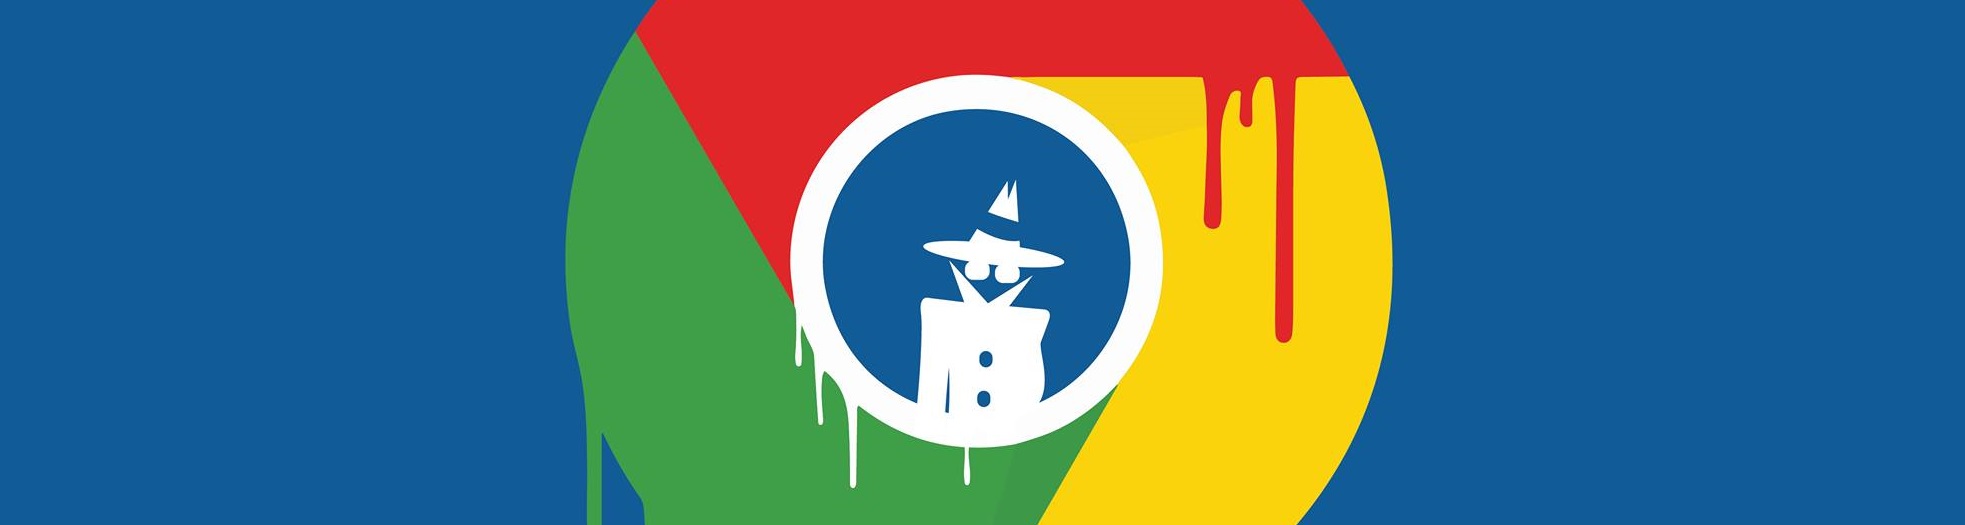 Existe privacidade para o Google Chrome?